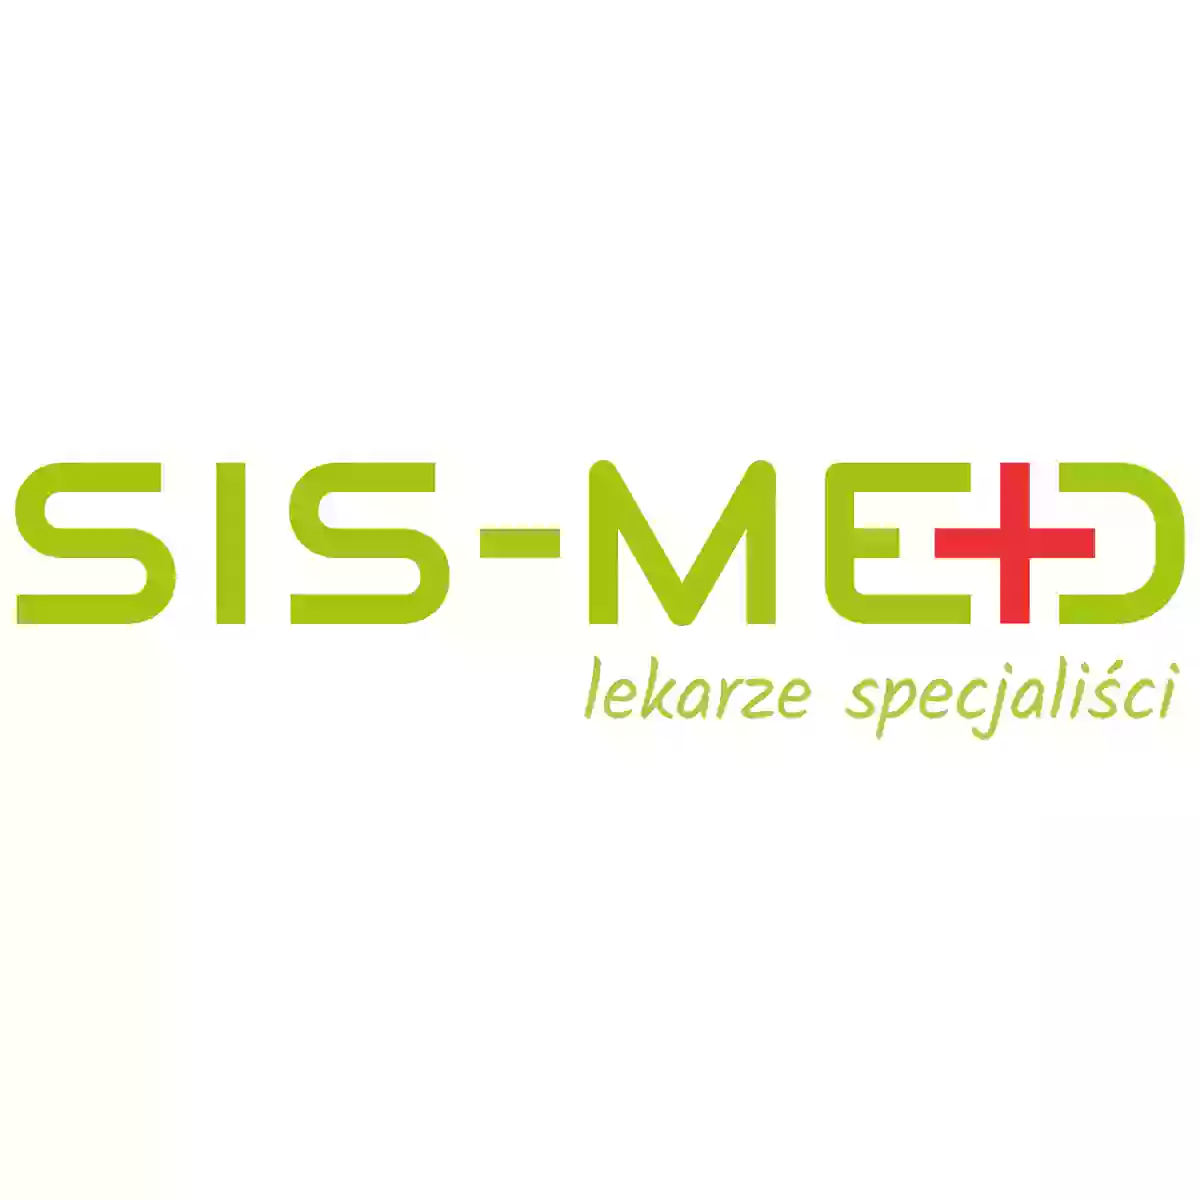 SIS-MED - Lekarze Specjaliści